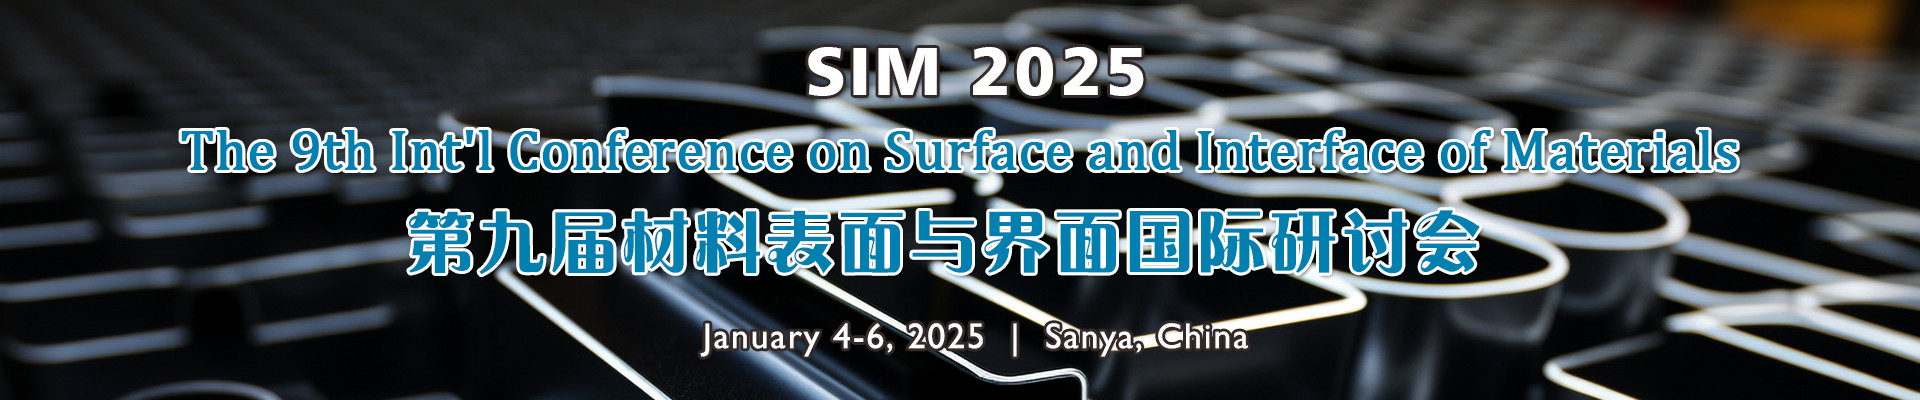 第九届材料表面与界面国际研讨会(SIM 2025)